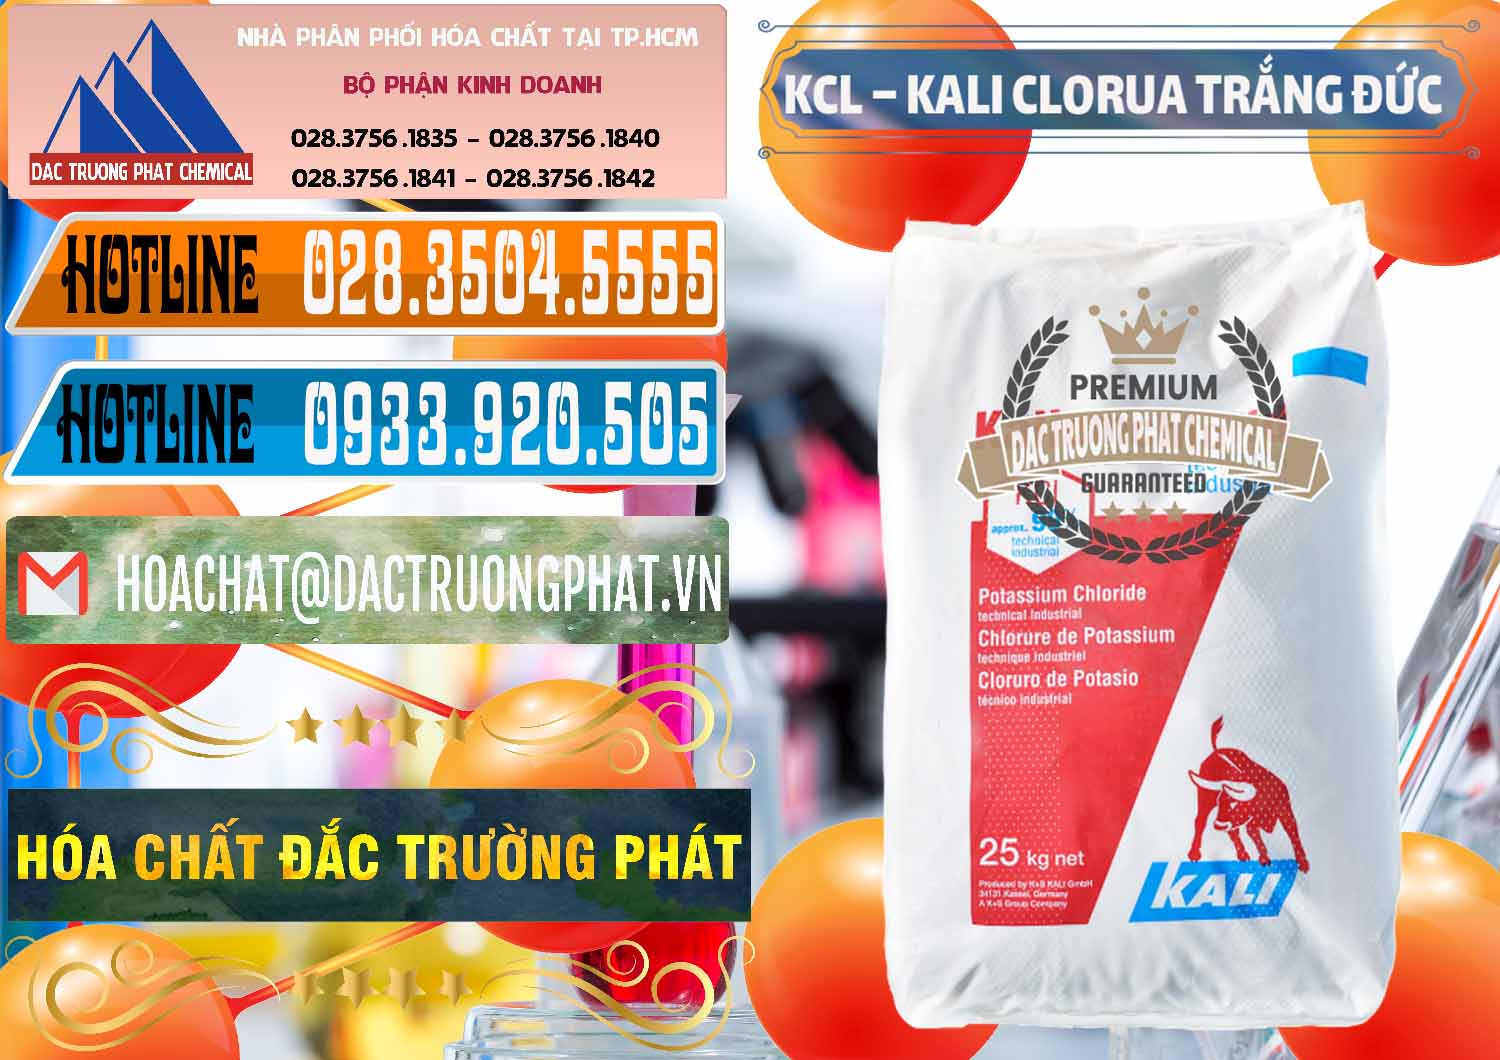 Đơn vị bán & phân phối KCL – Kali Clorua Trắng Đức Germany - 0086 - Đơn vị chuyên cung cấp & bán hóa chất tại TP.HCM - stmp.net